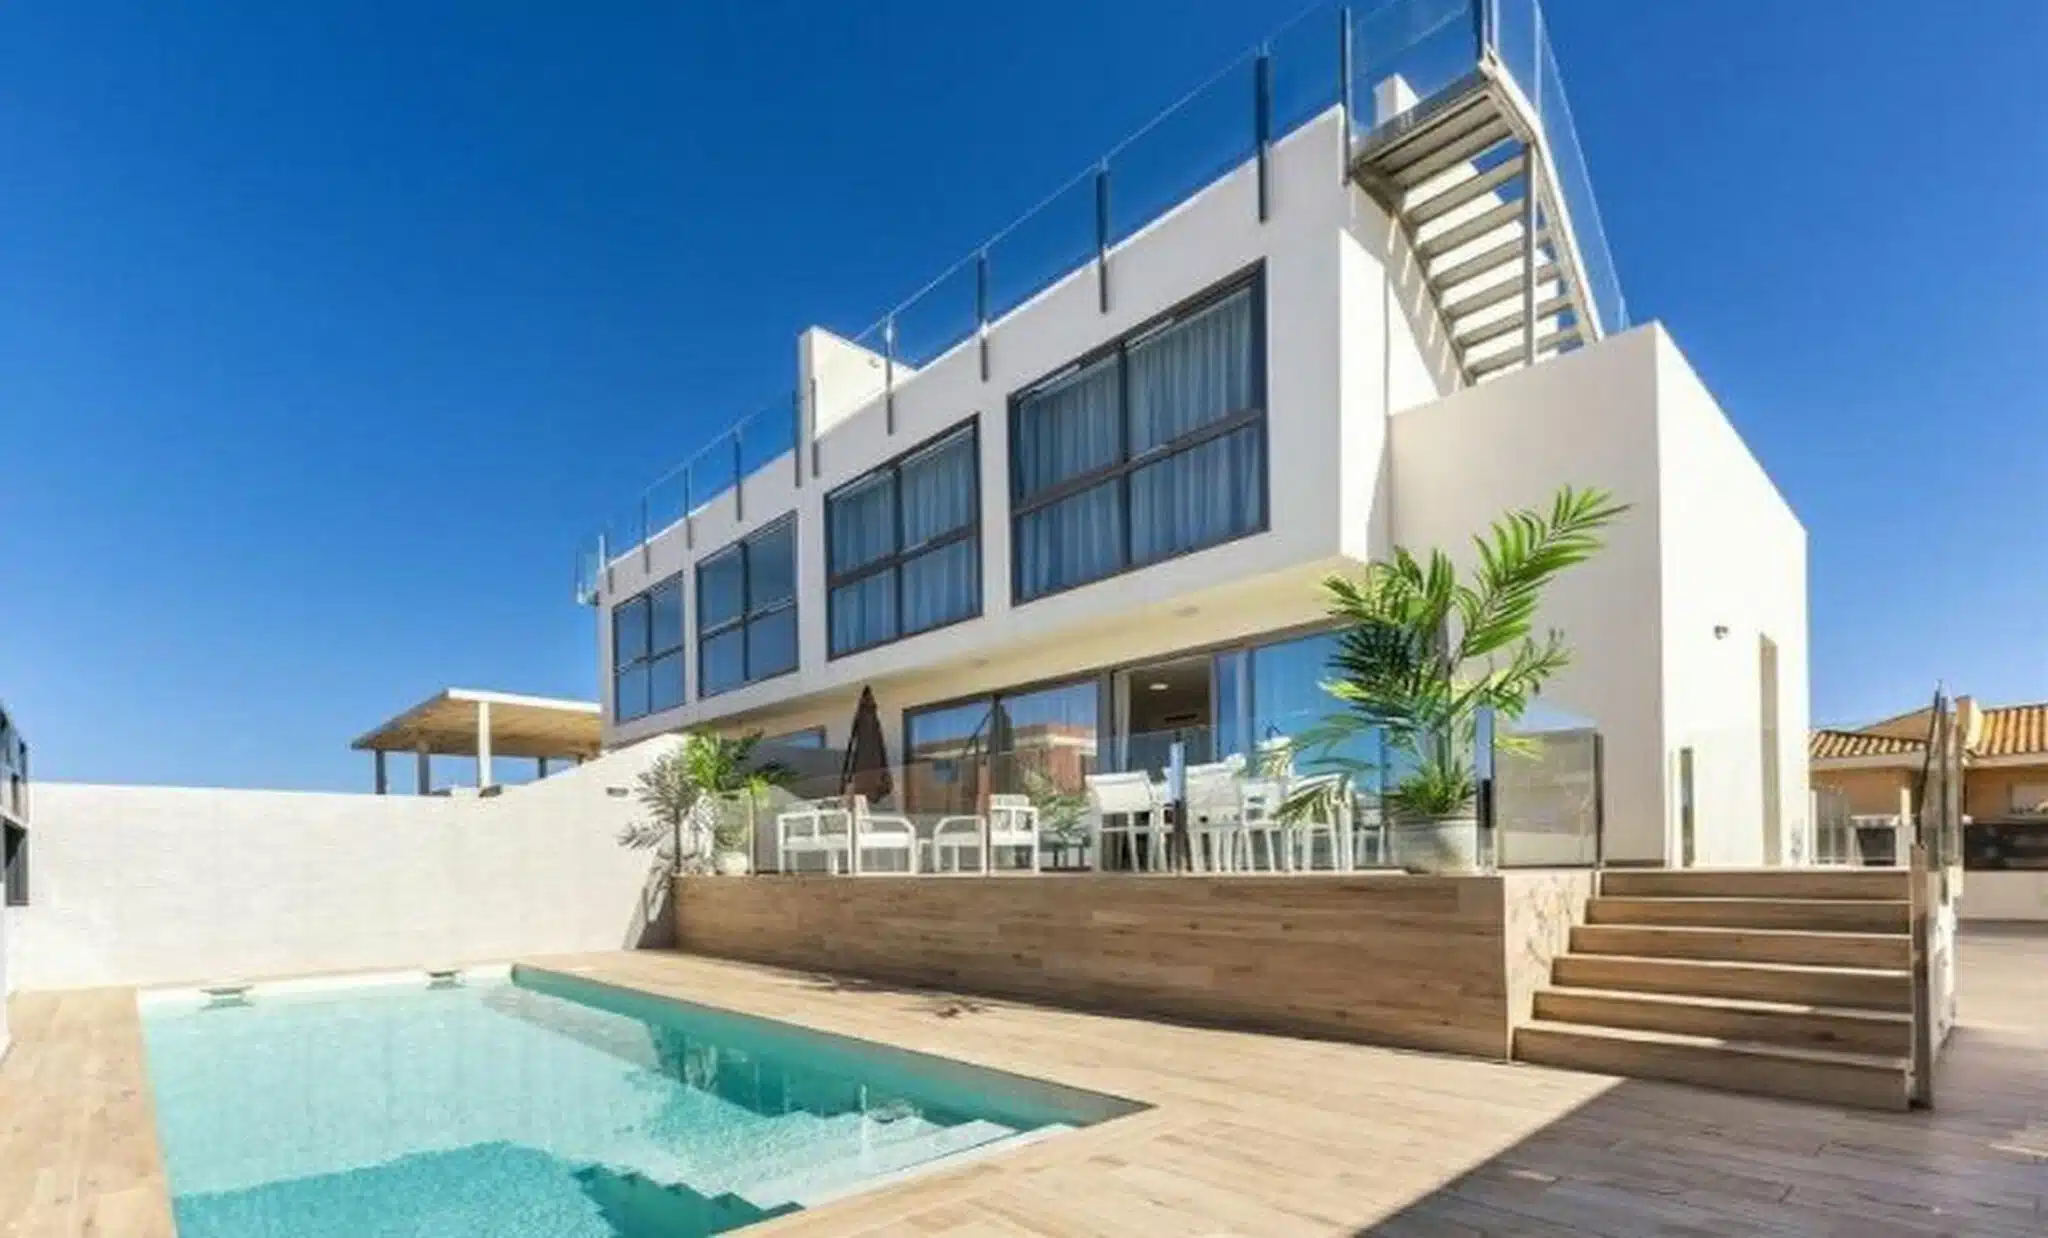 Nieuwbouw Villa Verkocht in Cartagena (30385) in Spanje, gelegen aan de Costa Cálida